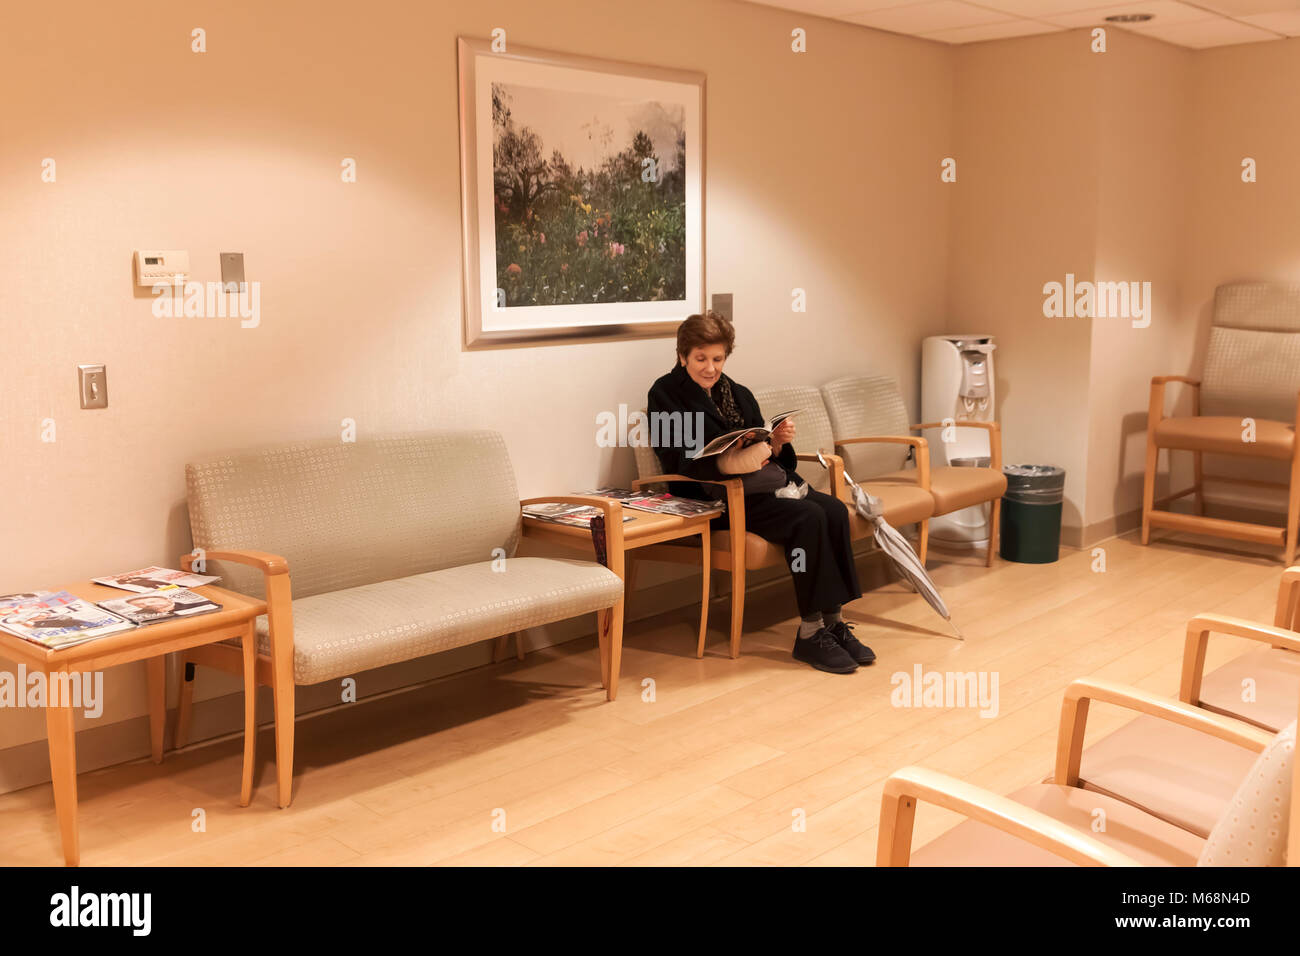 Mujer sentada en la sala de espera de un consultorio médico. Foto de stock